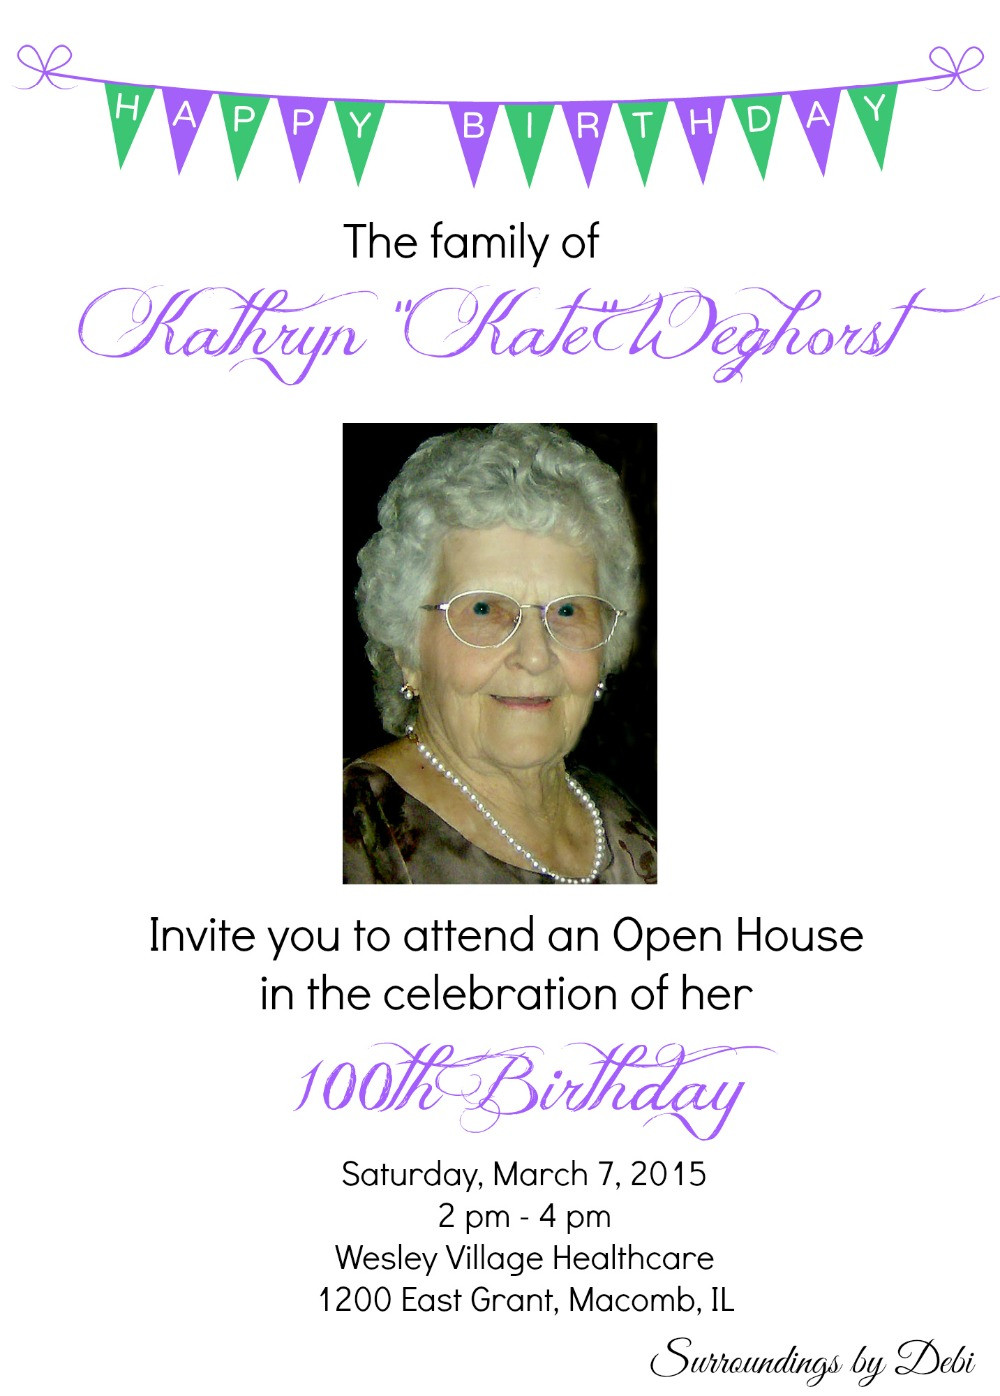 100th Birthday Party Ideas
 100th Birthday Party Ideas Celebrating 100 Years of Life